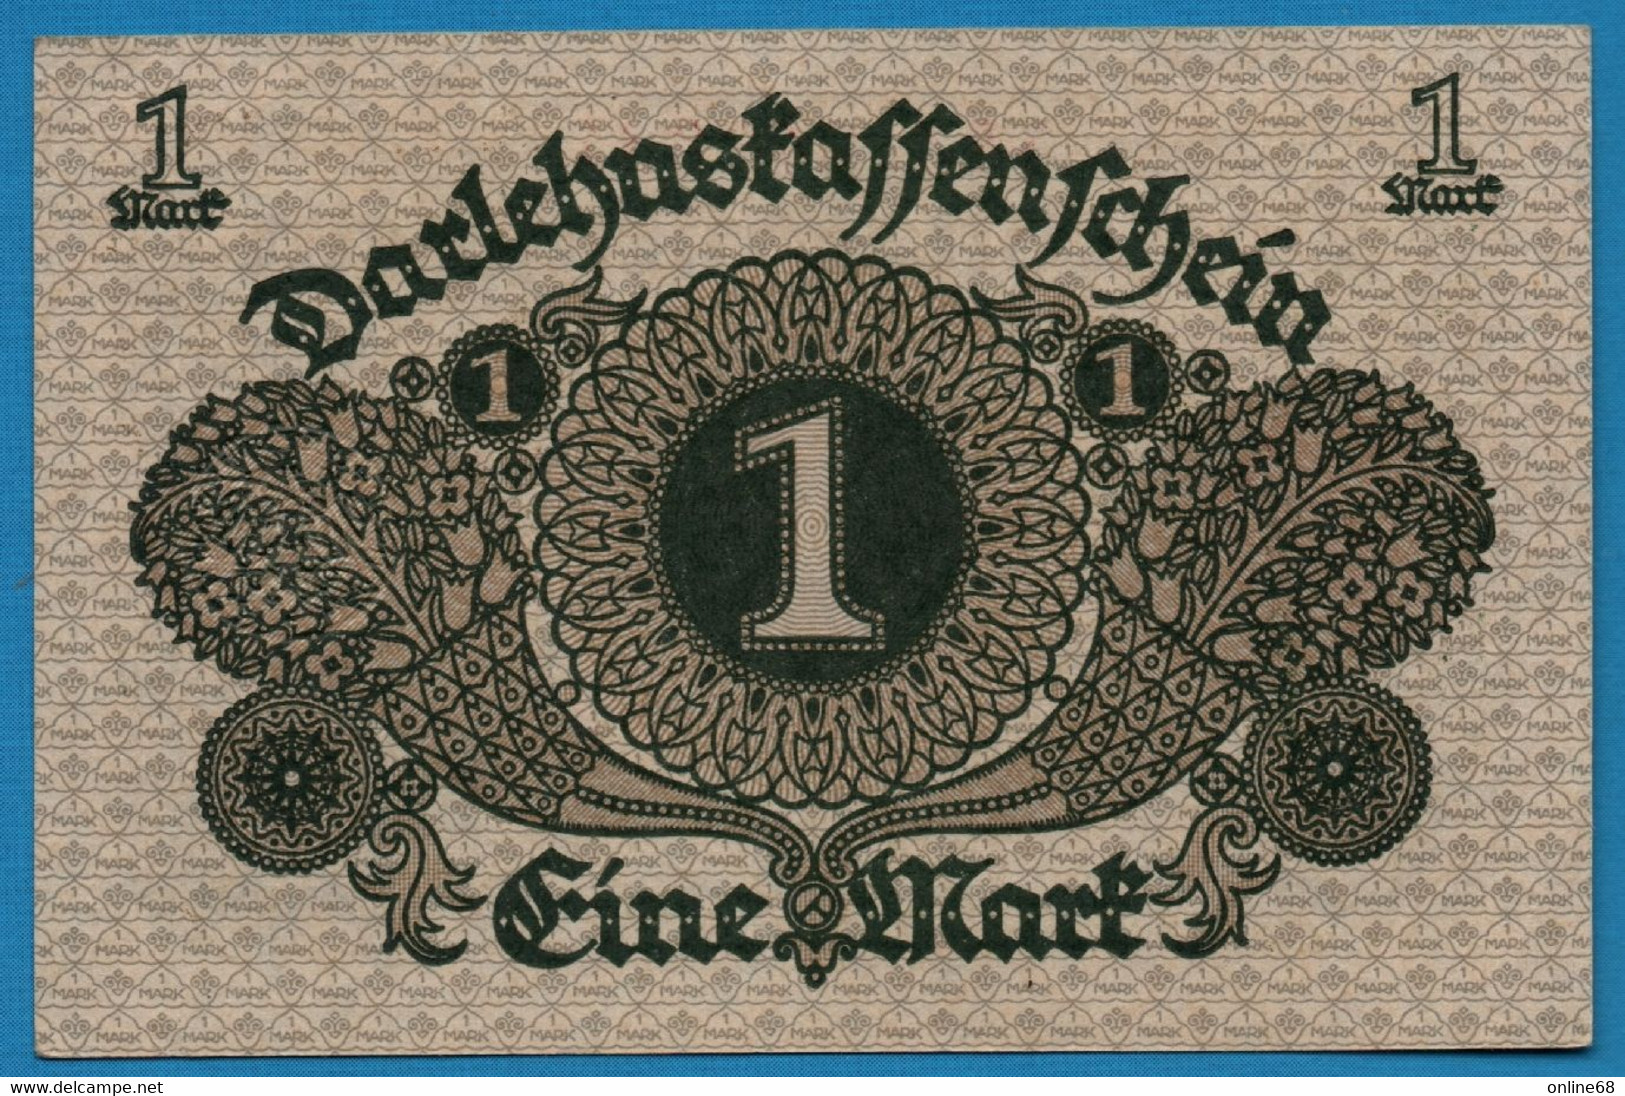 DEUTSCHES REICH 1 MARK 01.03.1920 # 443.242862 P# 58 DARLEHENSKASSENSCHEIN - Reichsschuldenverwaltung